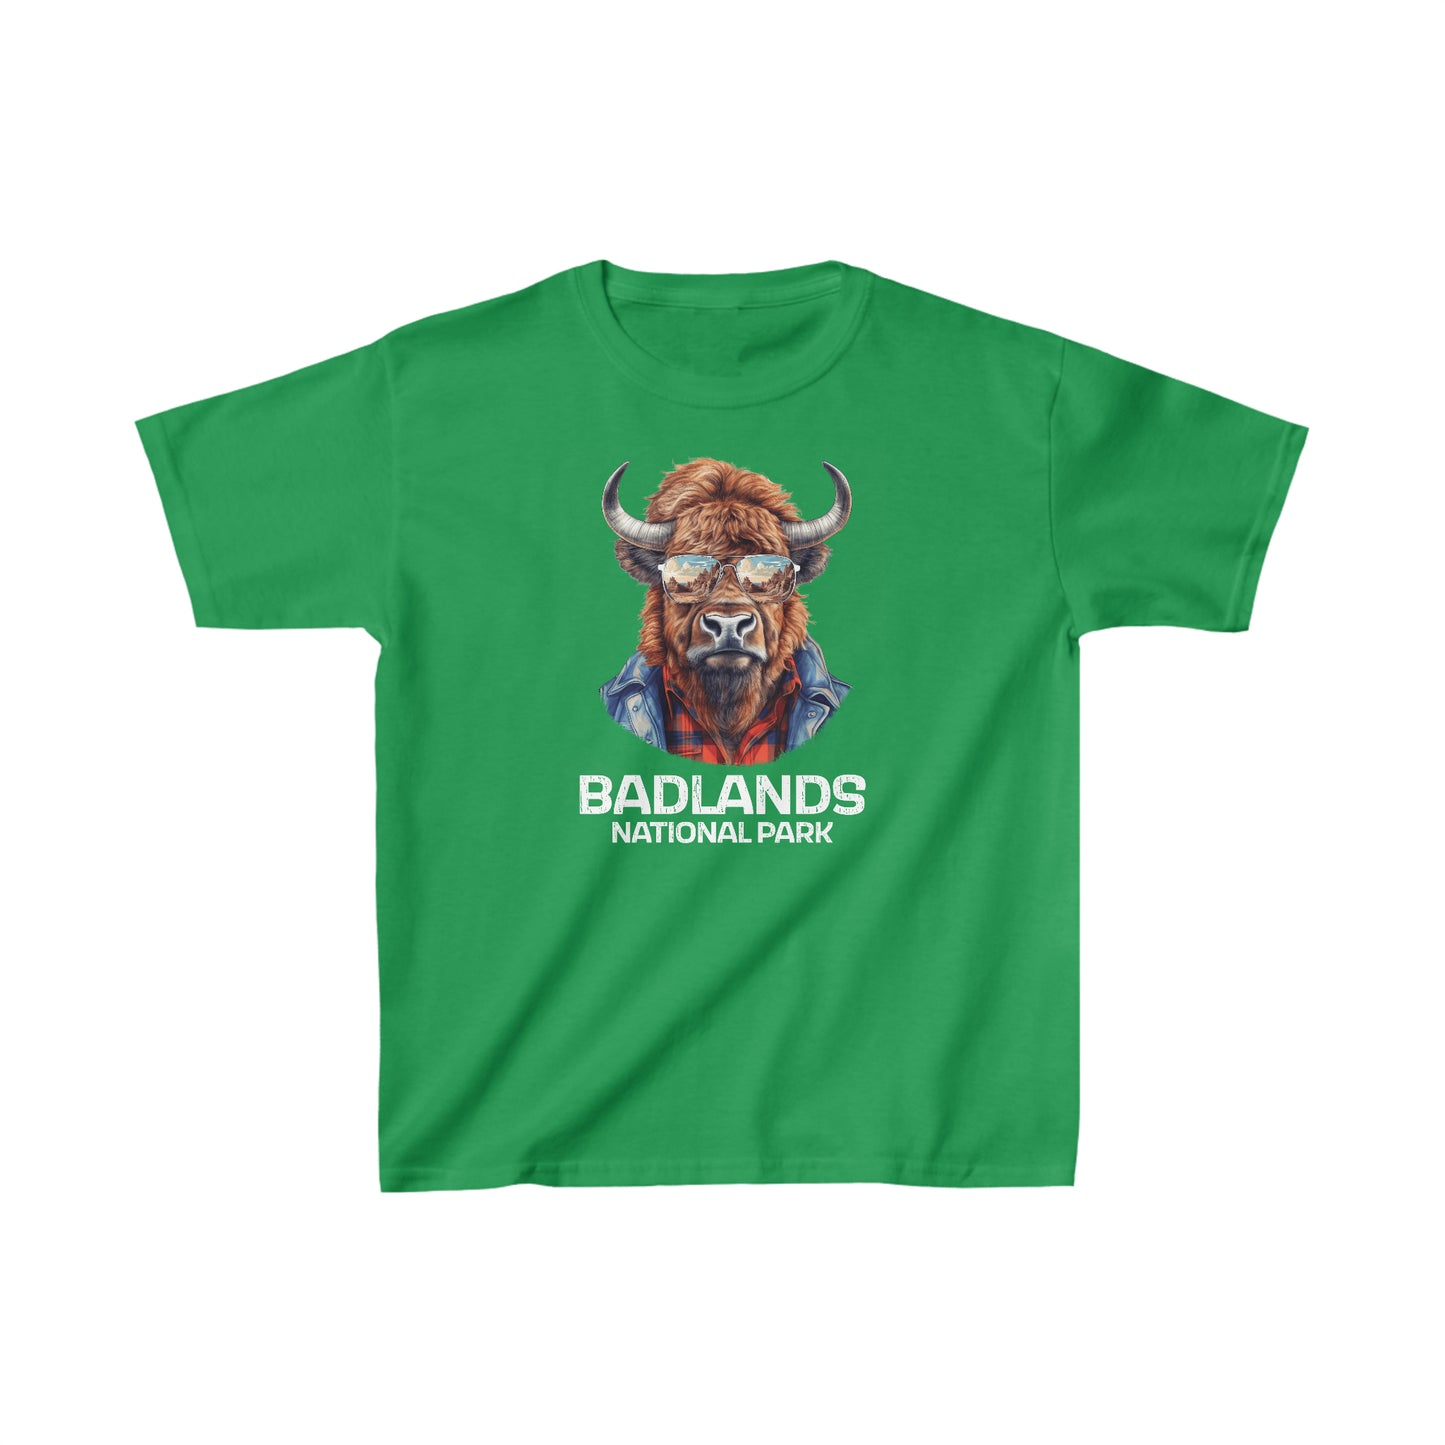 Badlands National Park Child T-Shirt - Cool Bison